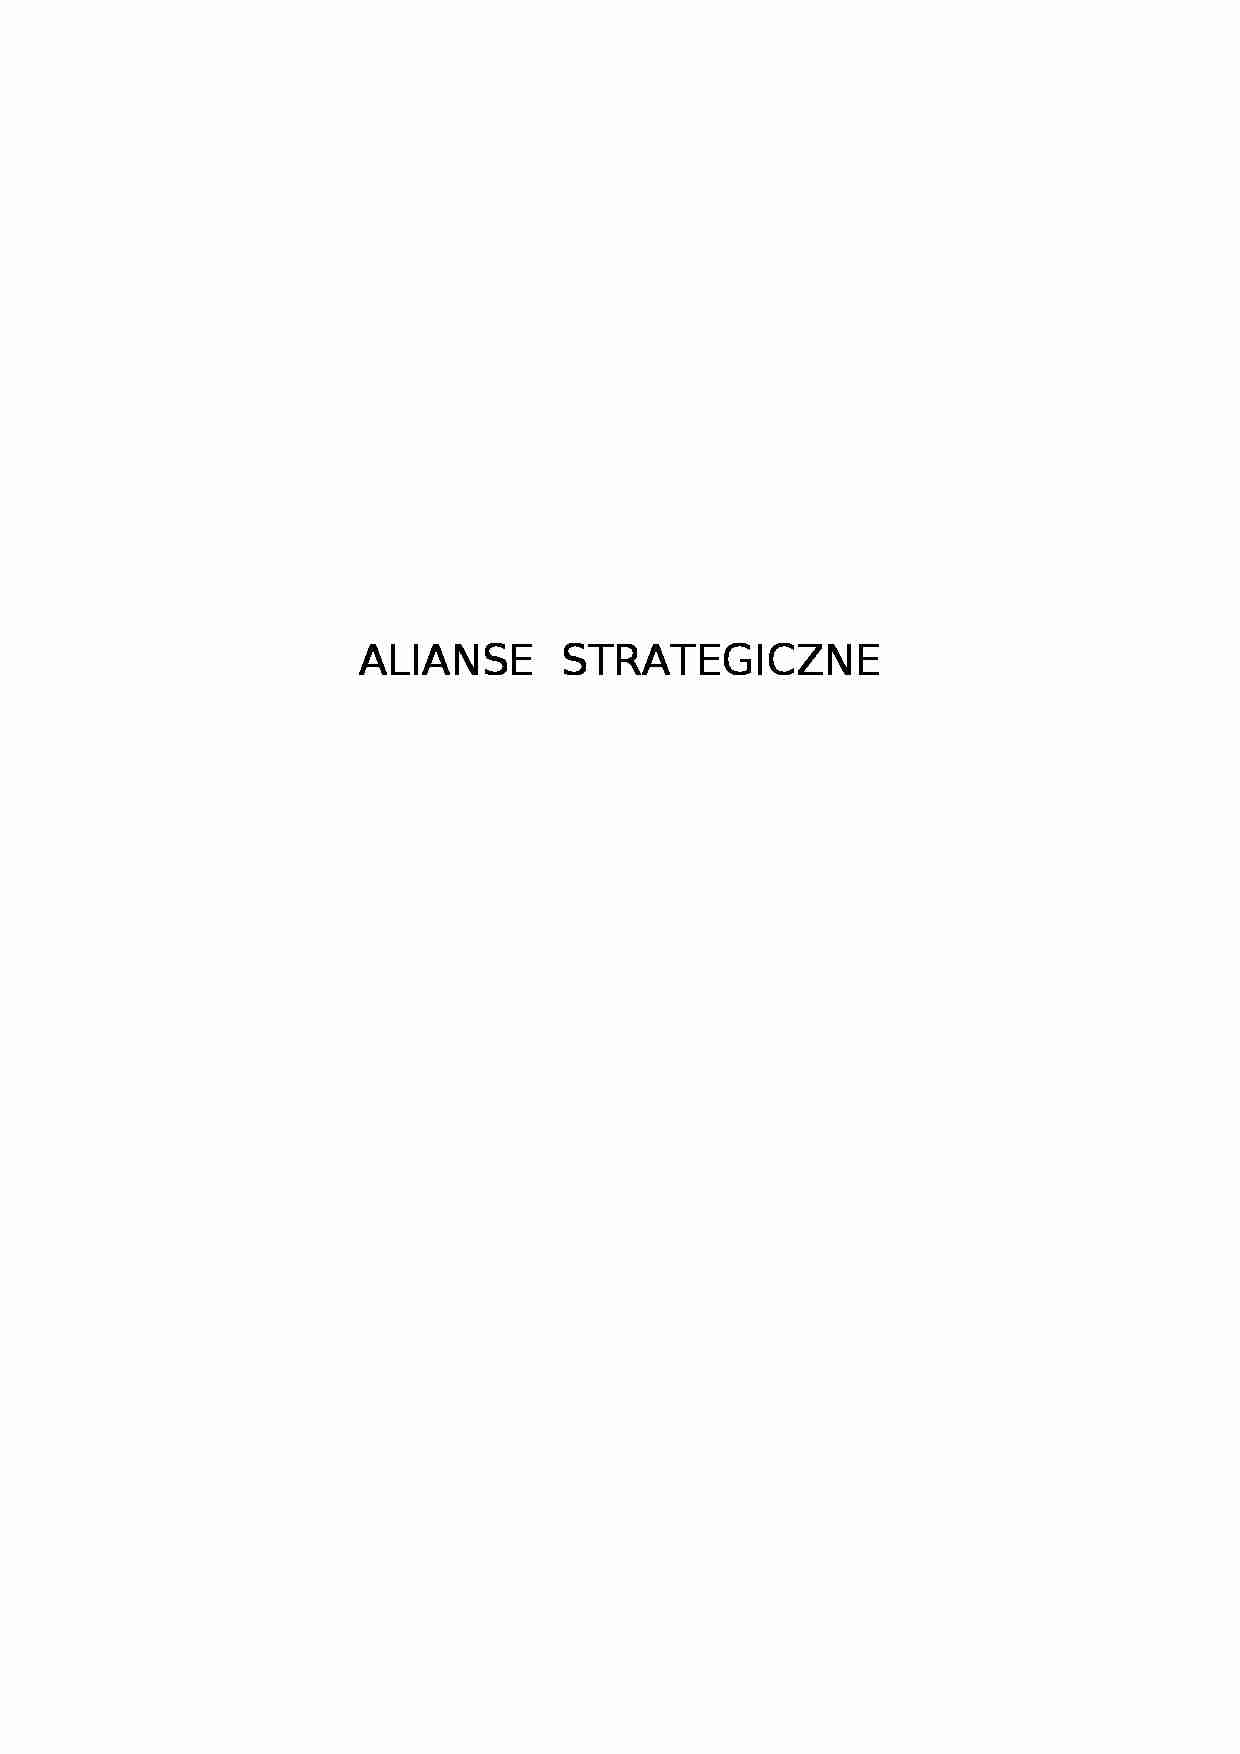 Alianse strategiczne - istota, cele, przyczyny - strona 1